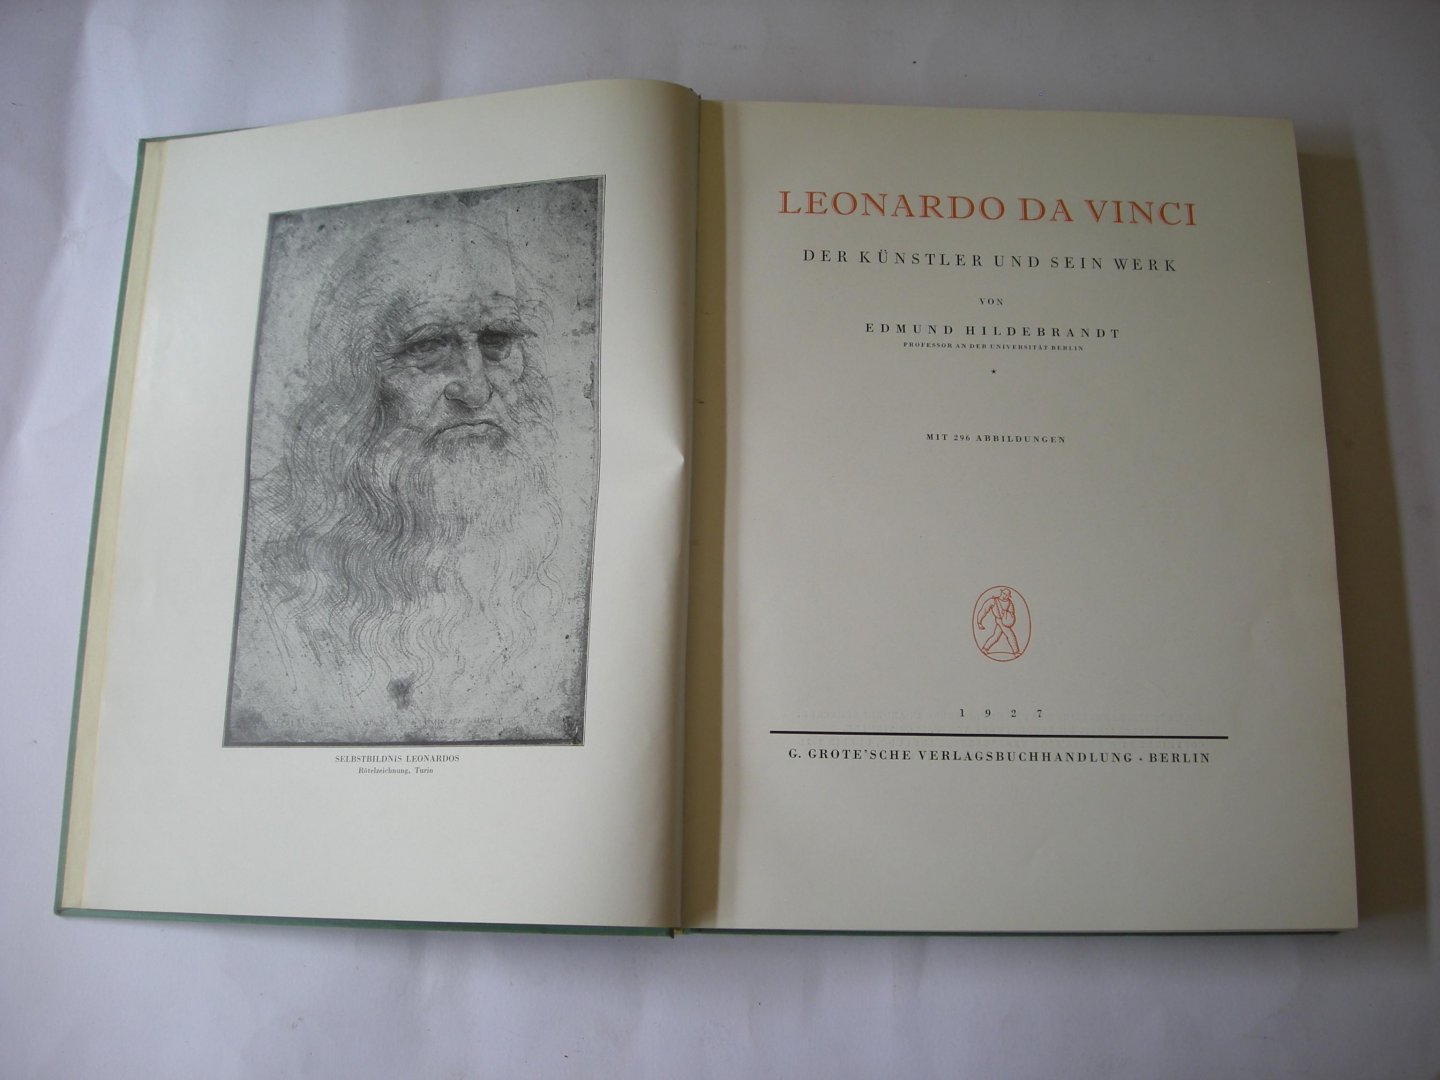 Hildebrandt, Edmund - Leonardo da Vinci. Der Kunstler und sein Werk.